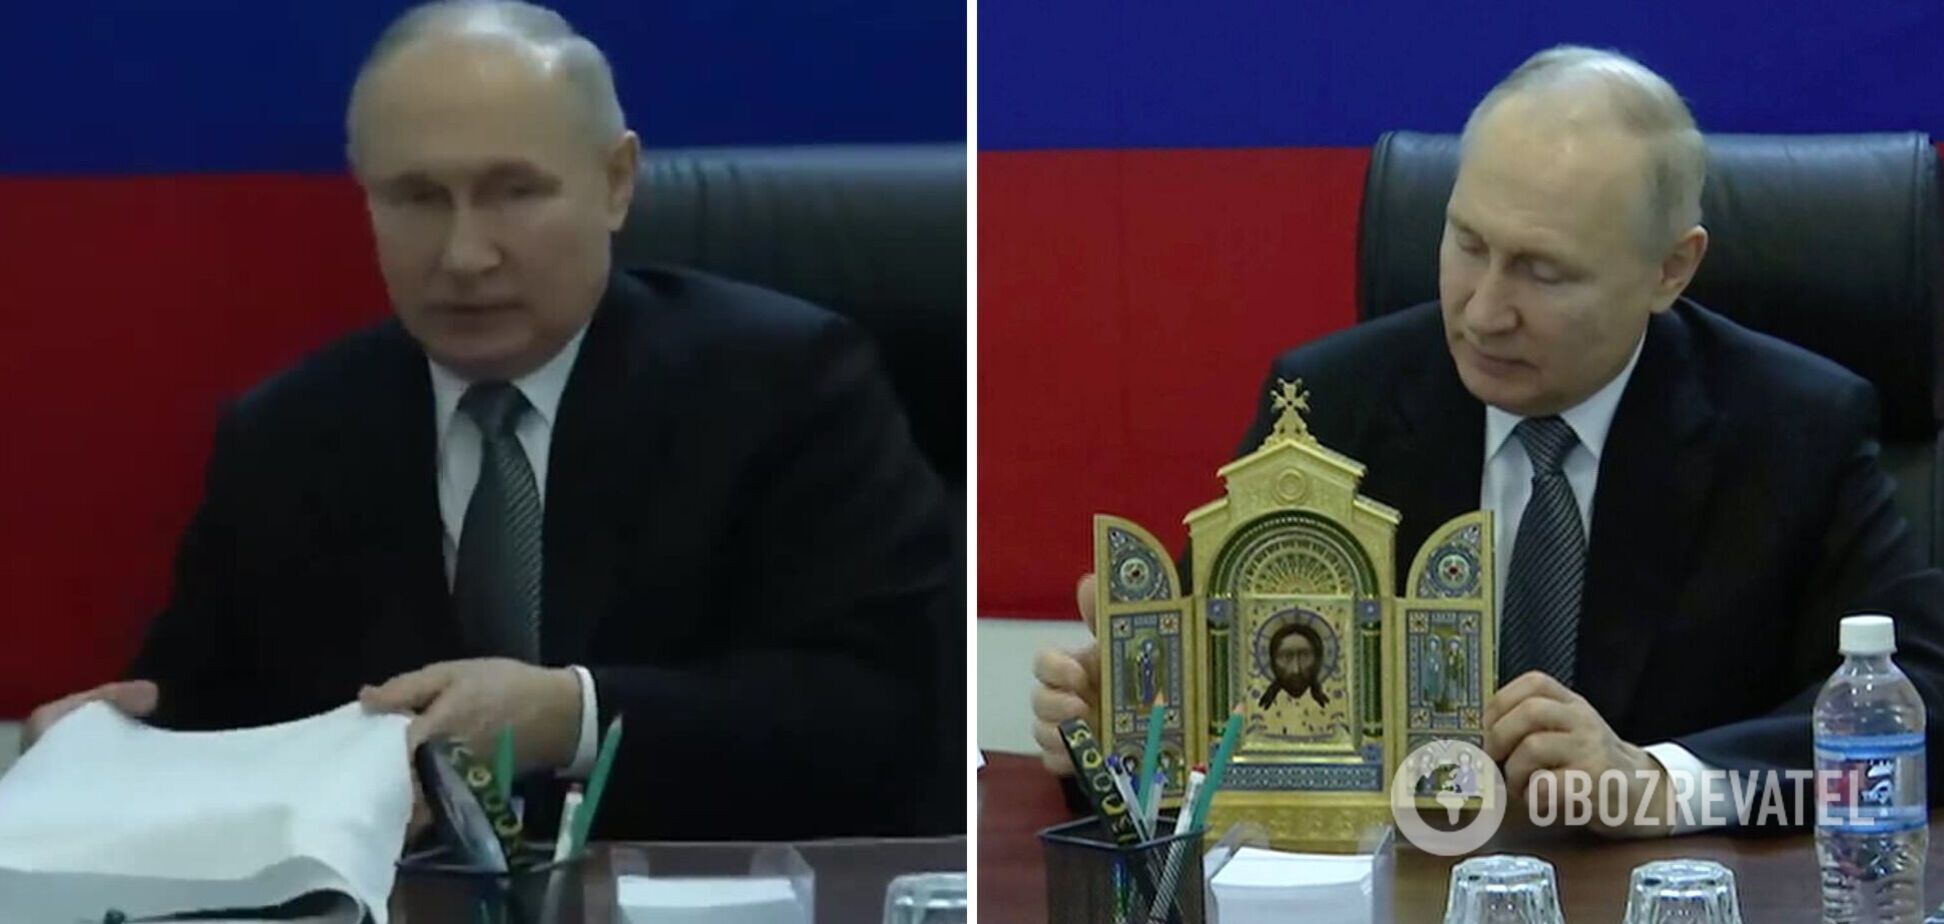 Будут работать вместо ПВО? Путин во время 'визита на Херсонщину' подарил иконы военным РФ и был высмеян в сети. Видео